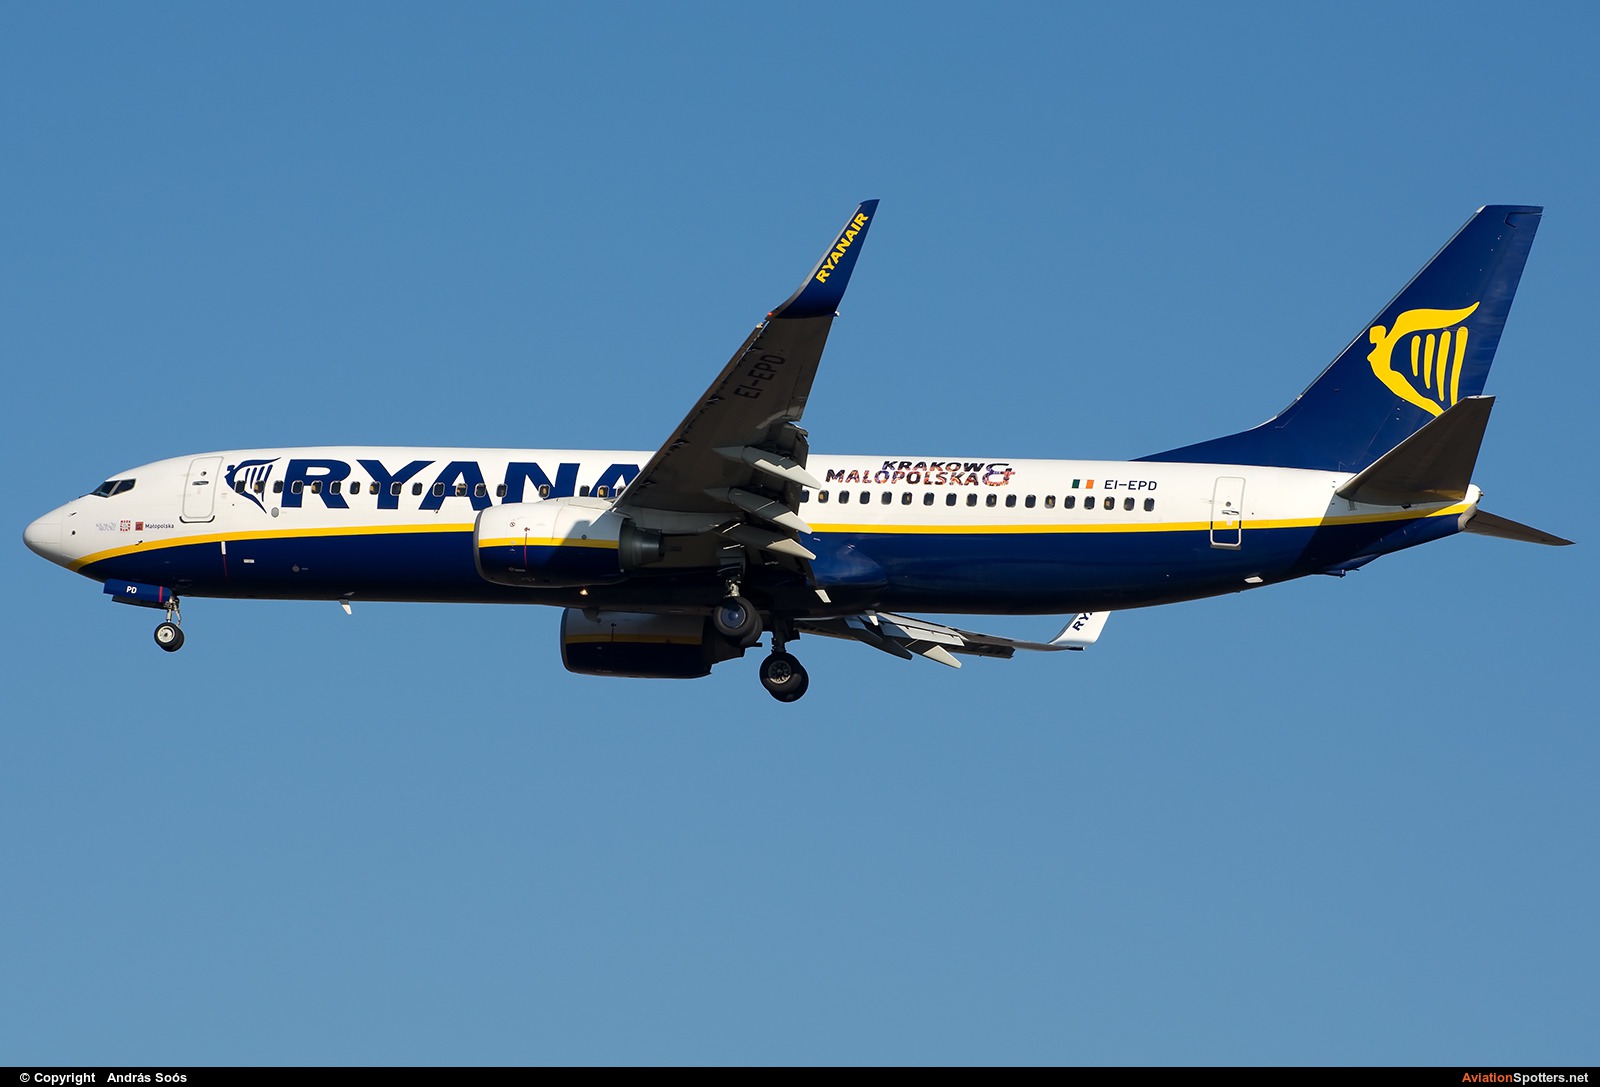 Ryanair  -  737-800  (EI-EPD) By András Soós (sas1965)